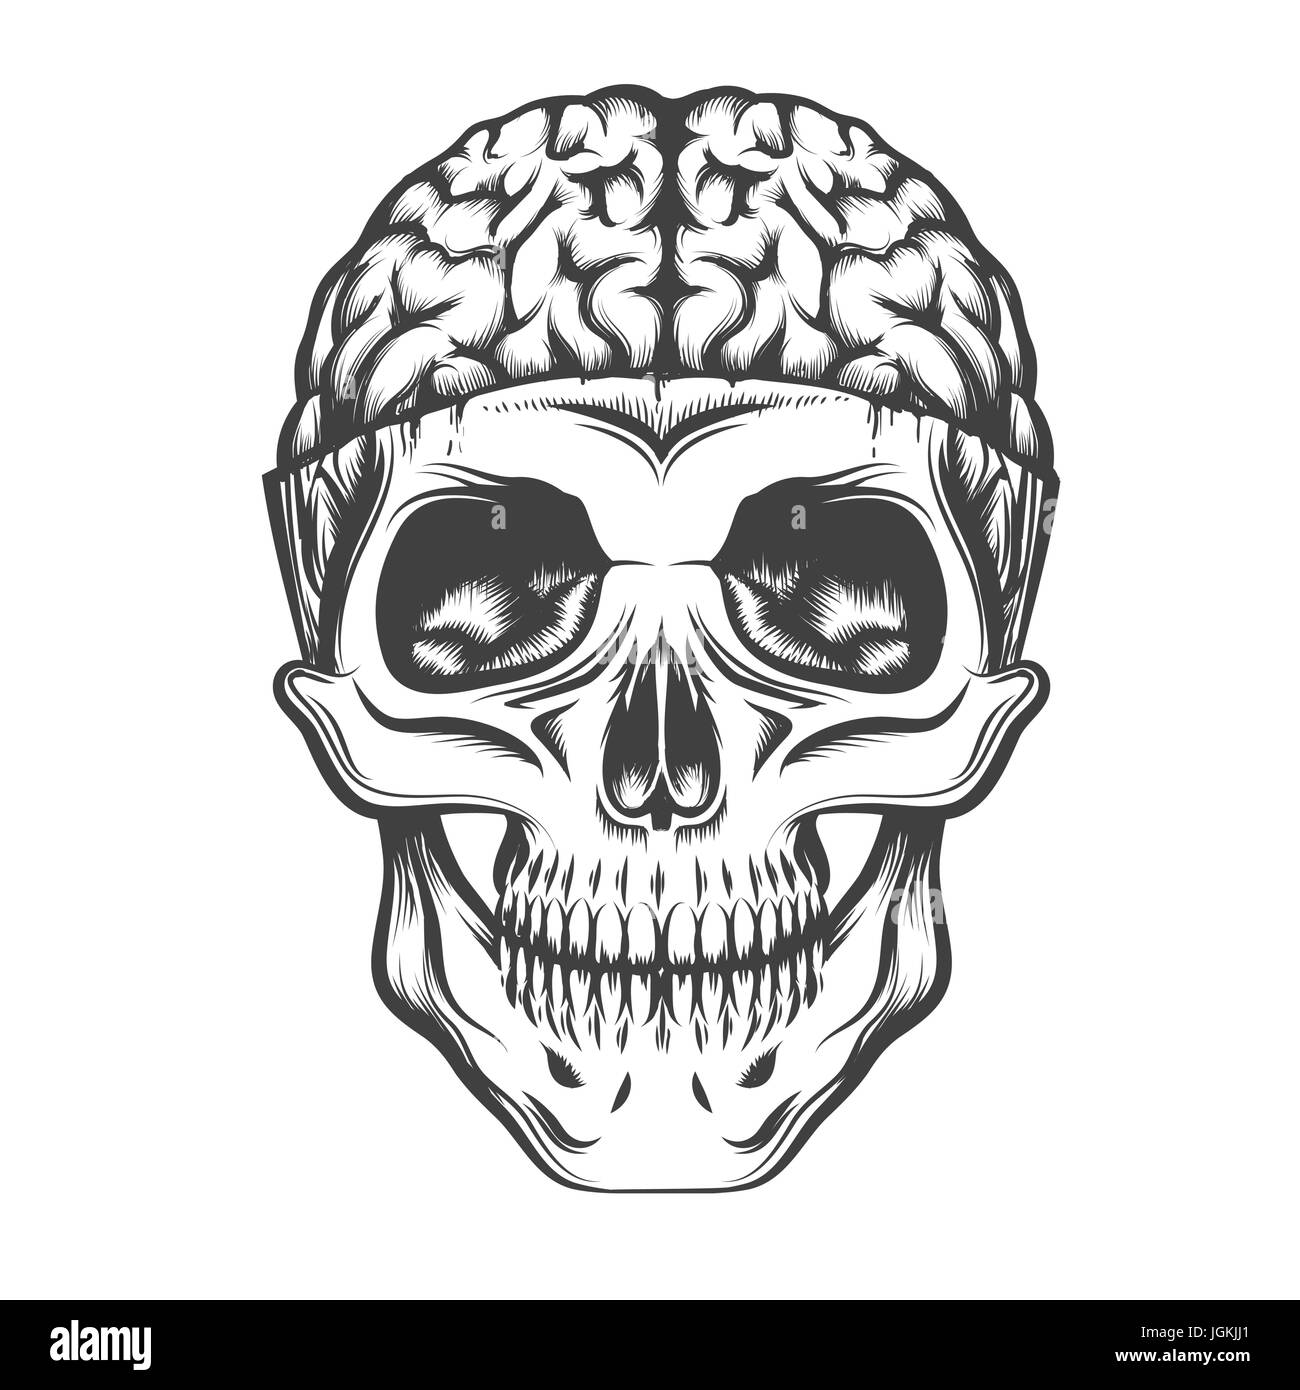 Crâne humain avec le cerveau. Vector illustration dans le style de tatouage. Illustration de Vecteur